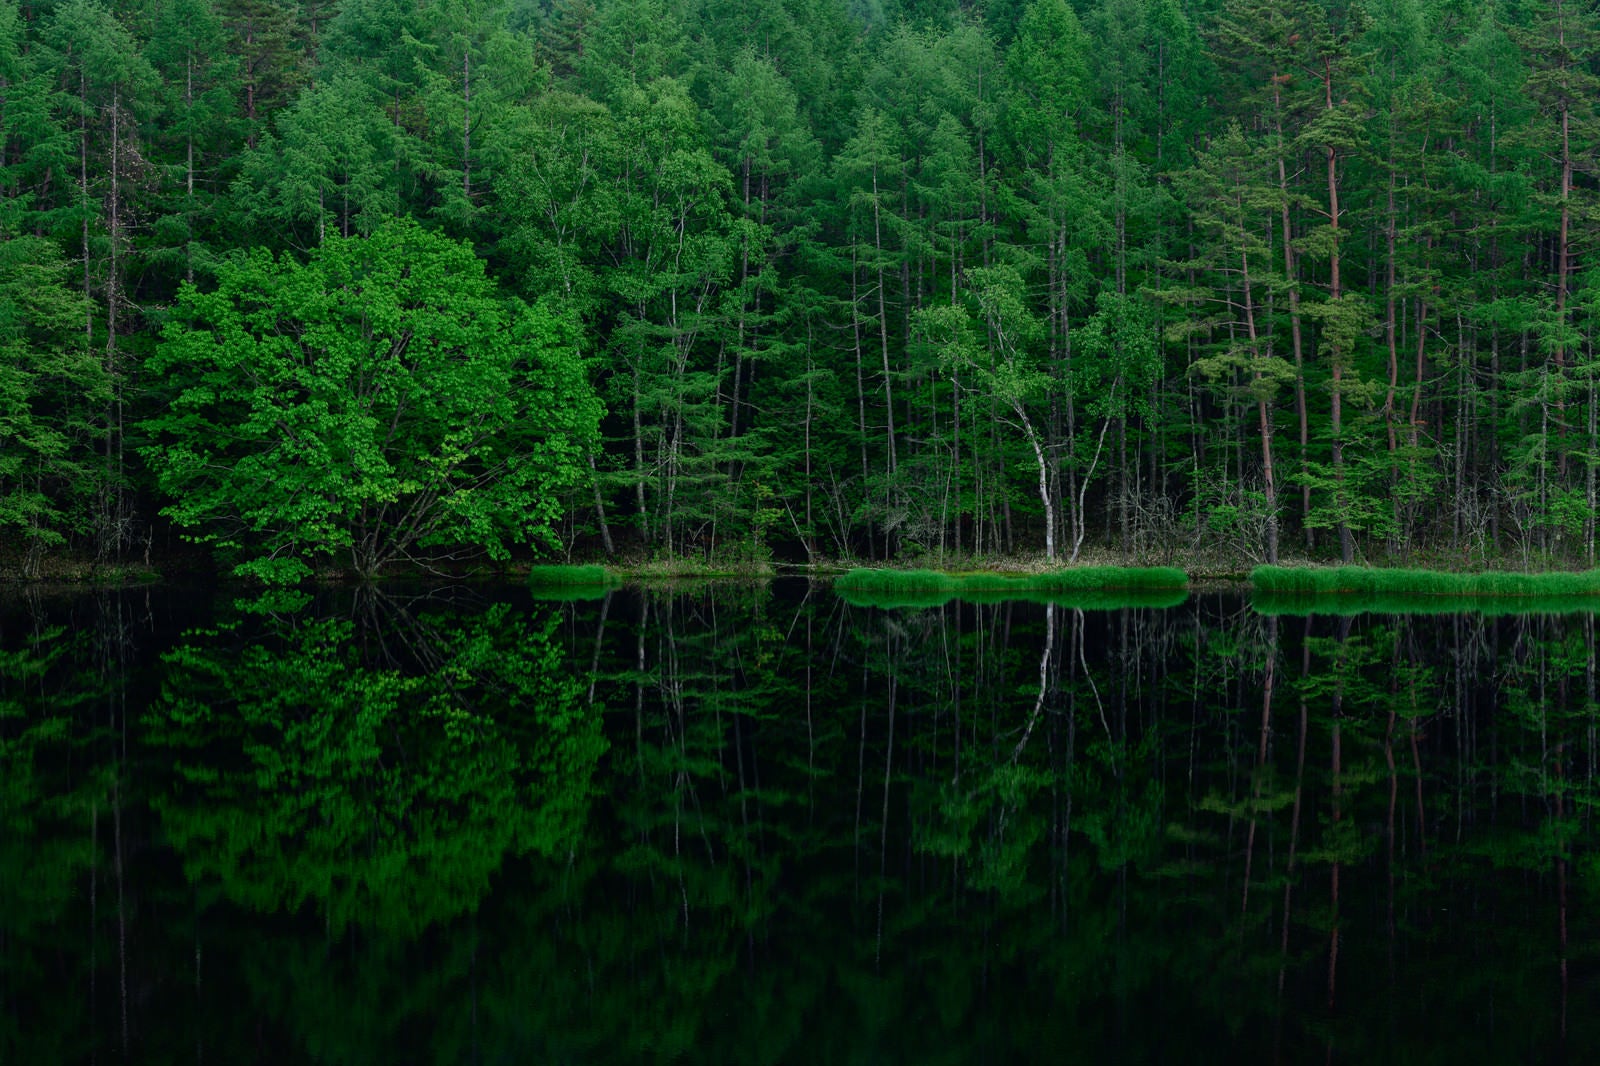 「池の水鏡に映る新緑の森」の写真